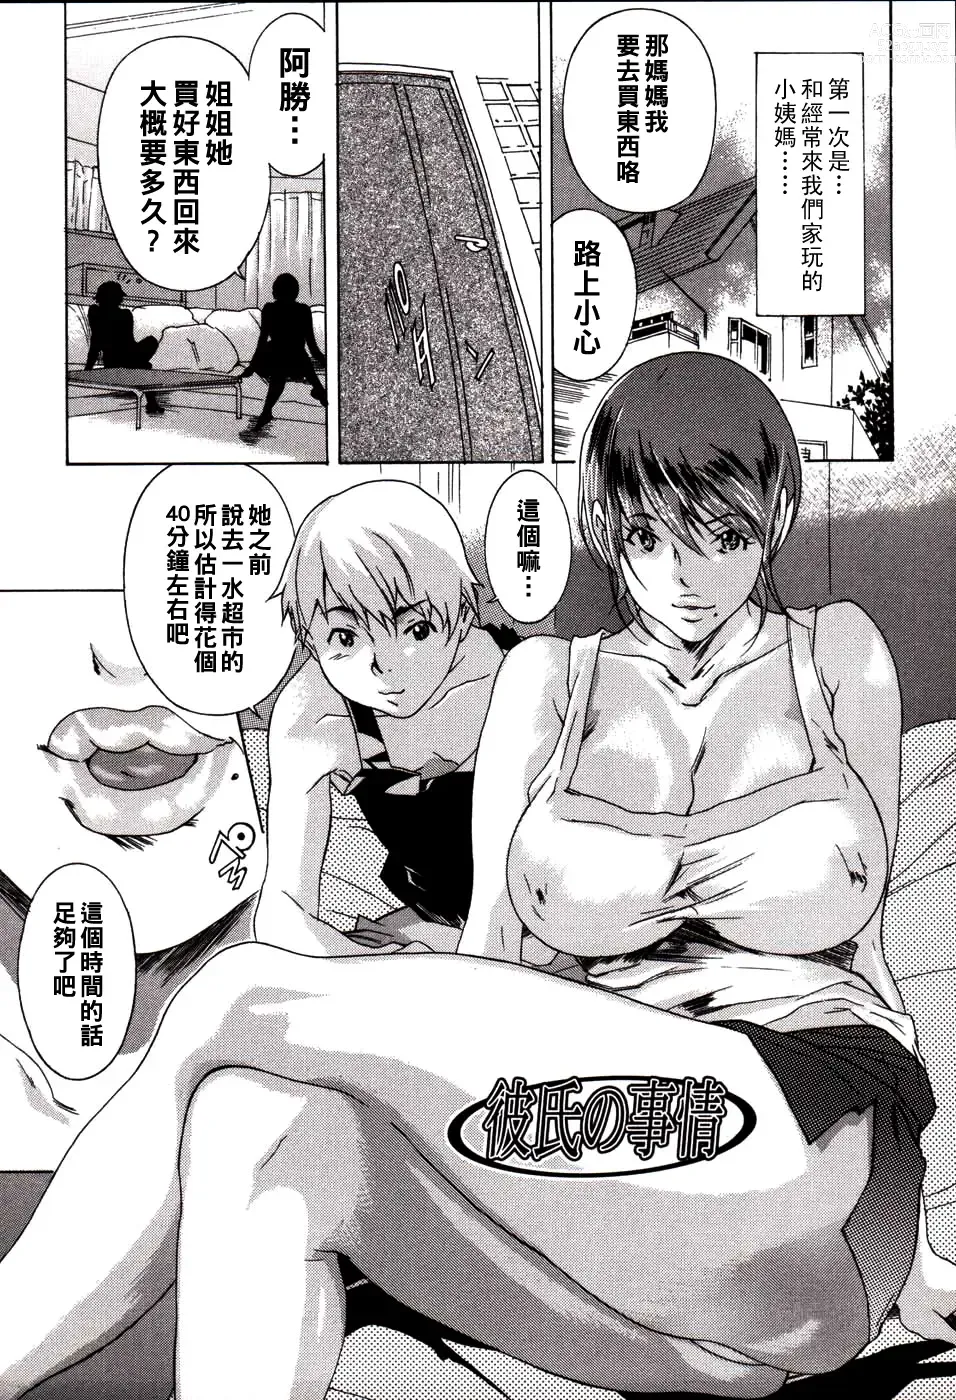 Page 1 of manga Kareshi no Jijou